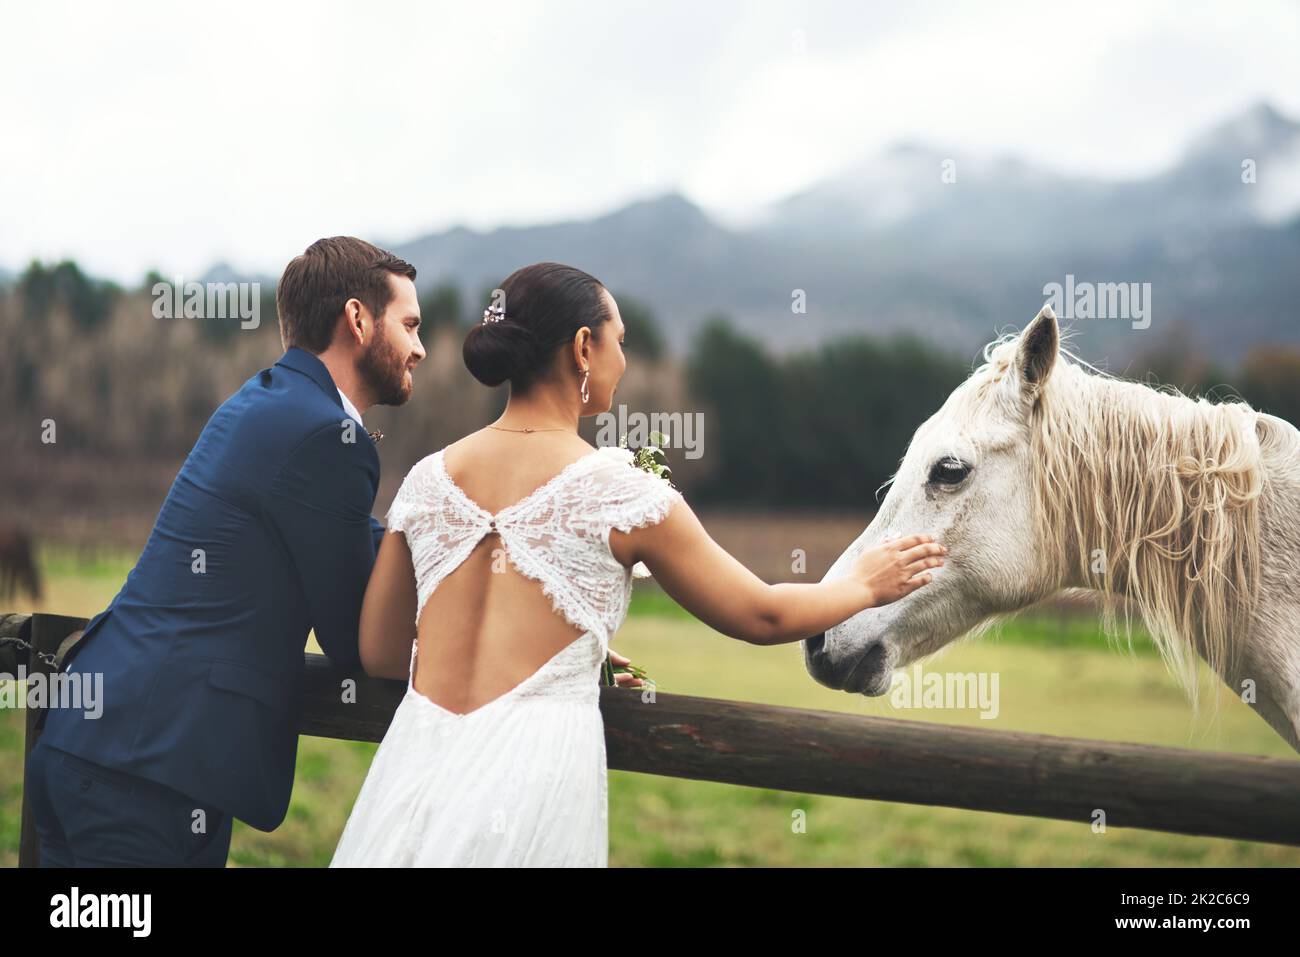 Laisse partir le coucher du soleil. Photo d'un jeune couple heureux et récemment mariés qui caressent un cheval à l'extérieur le jour de leur mariage. Banque D'Images